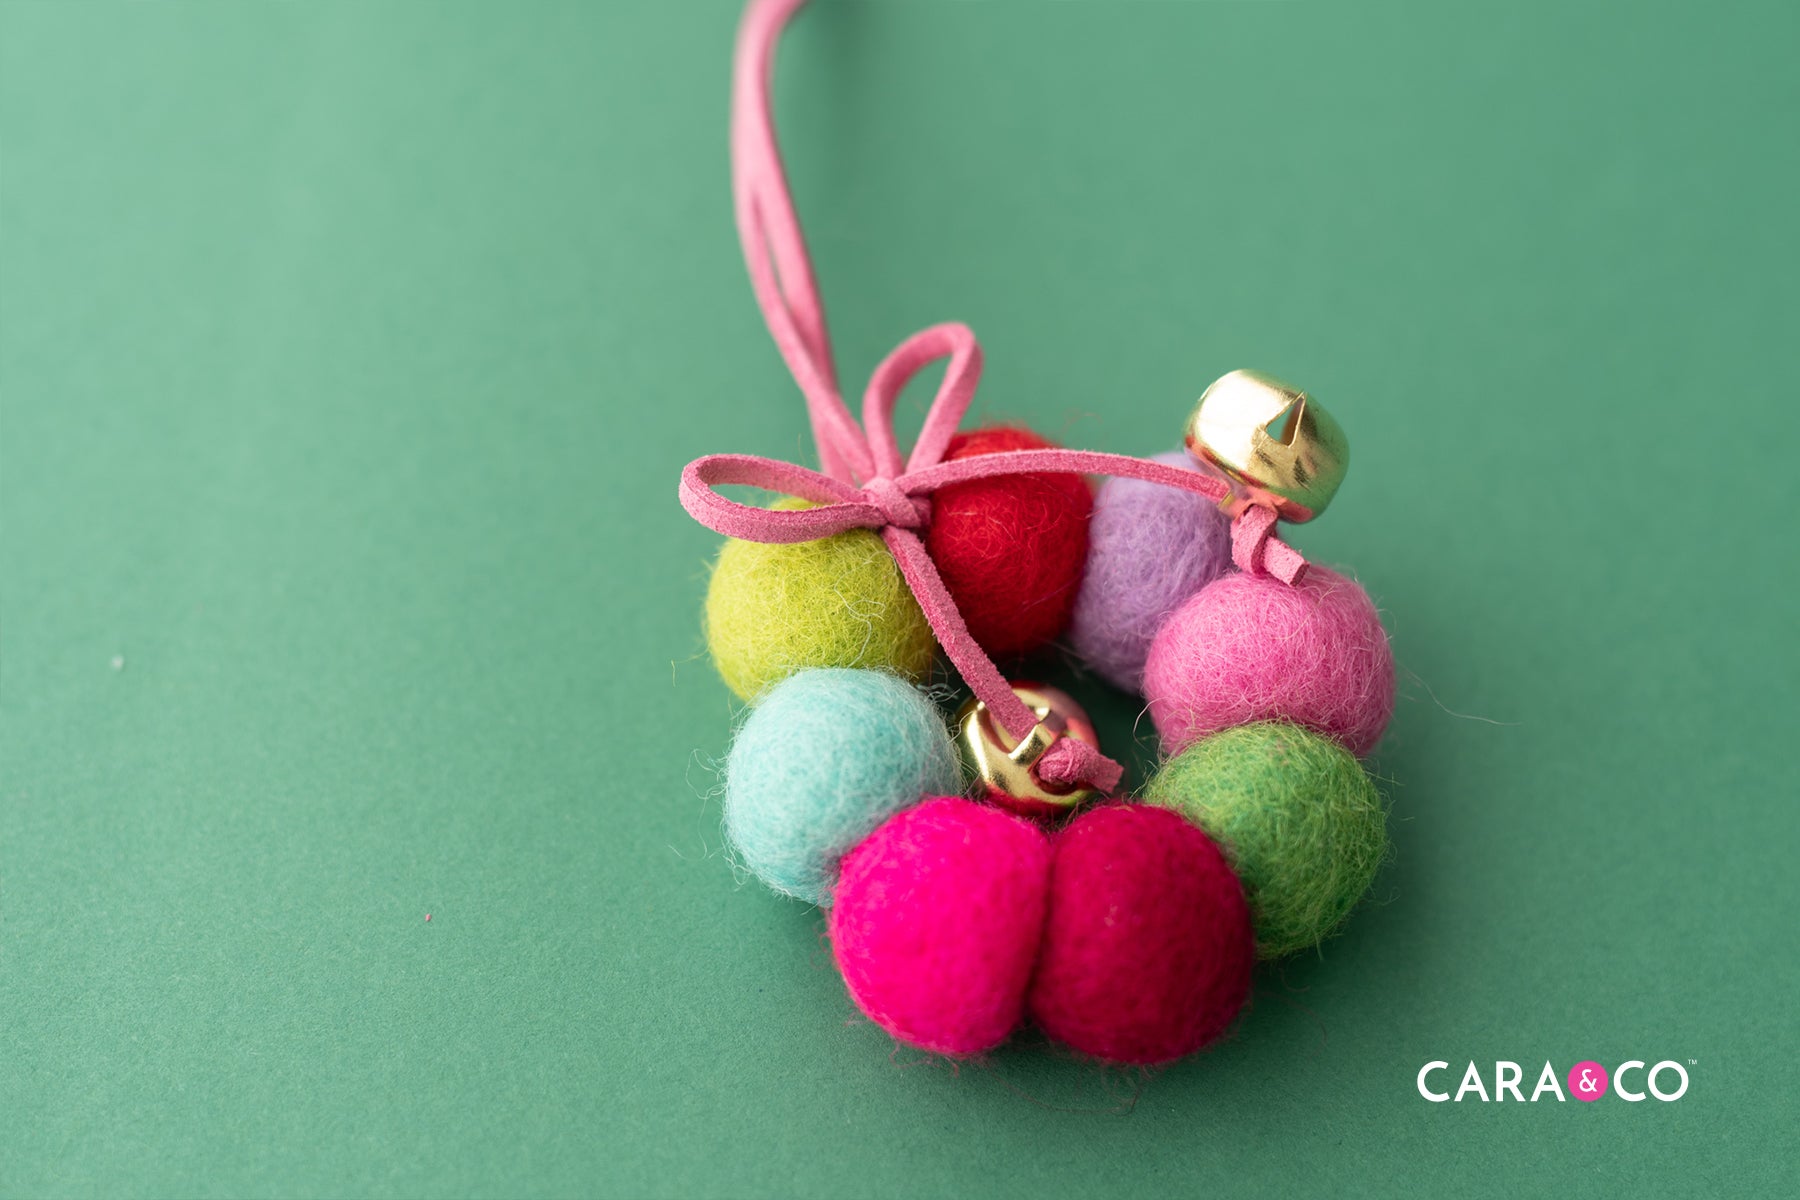 DIY Felt Ball Christmas Ornament - Cara & Co